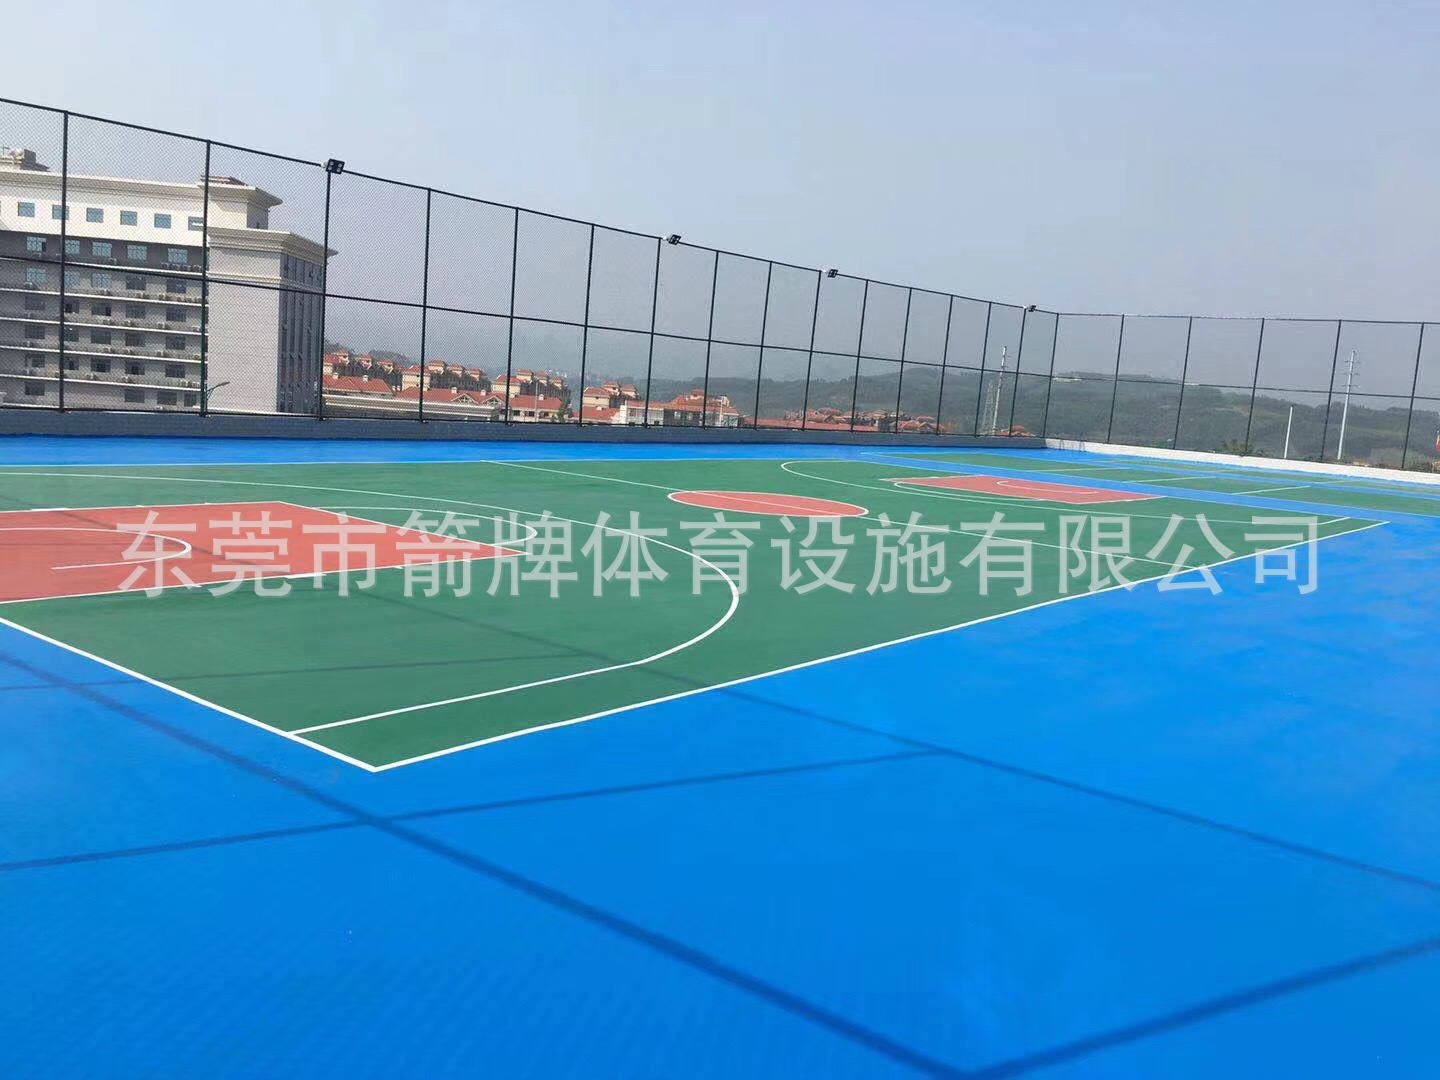 硅PU球场工程 丙烯酸篮球场工程施工 供应各类球场地面围网材料